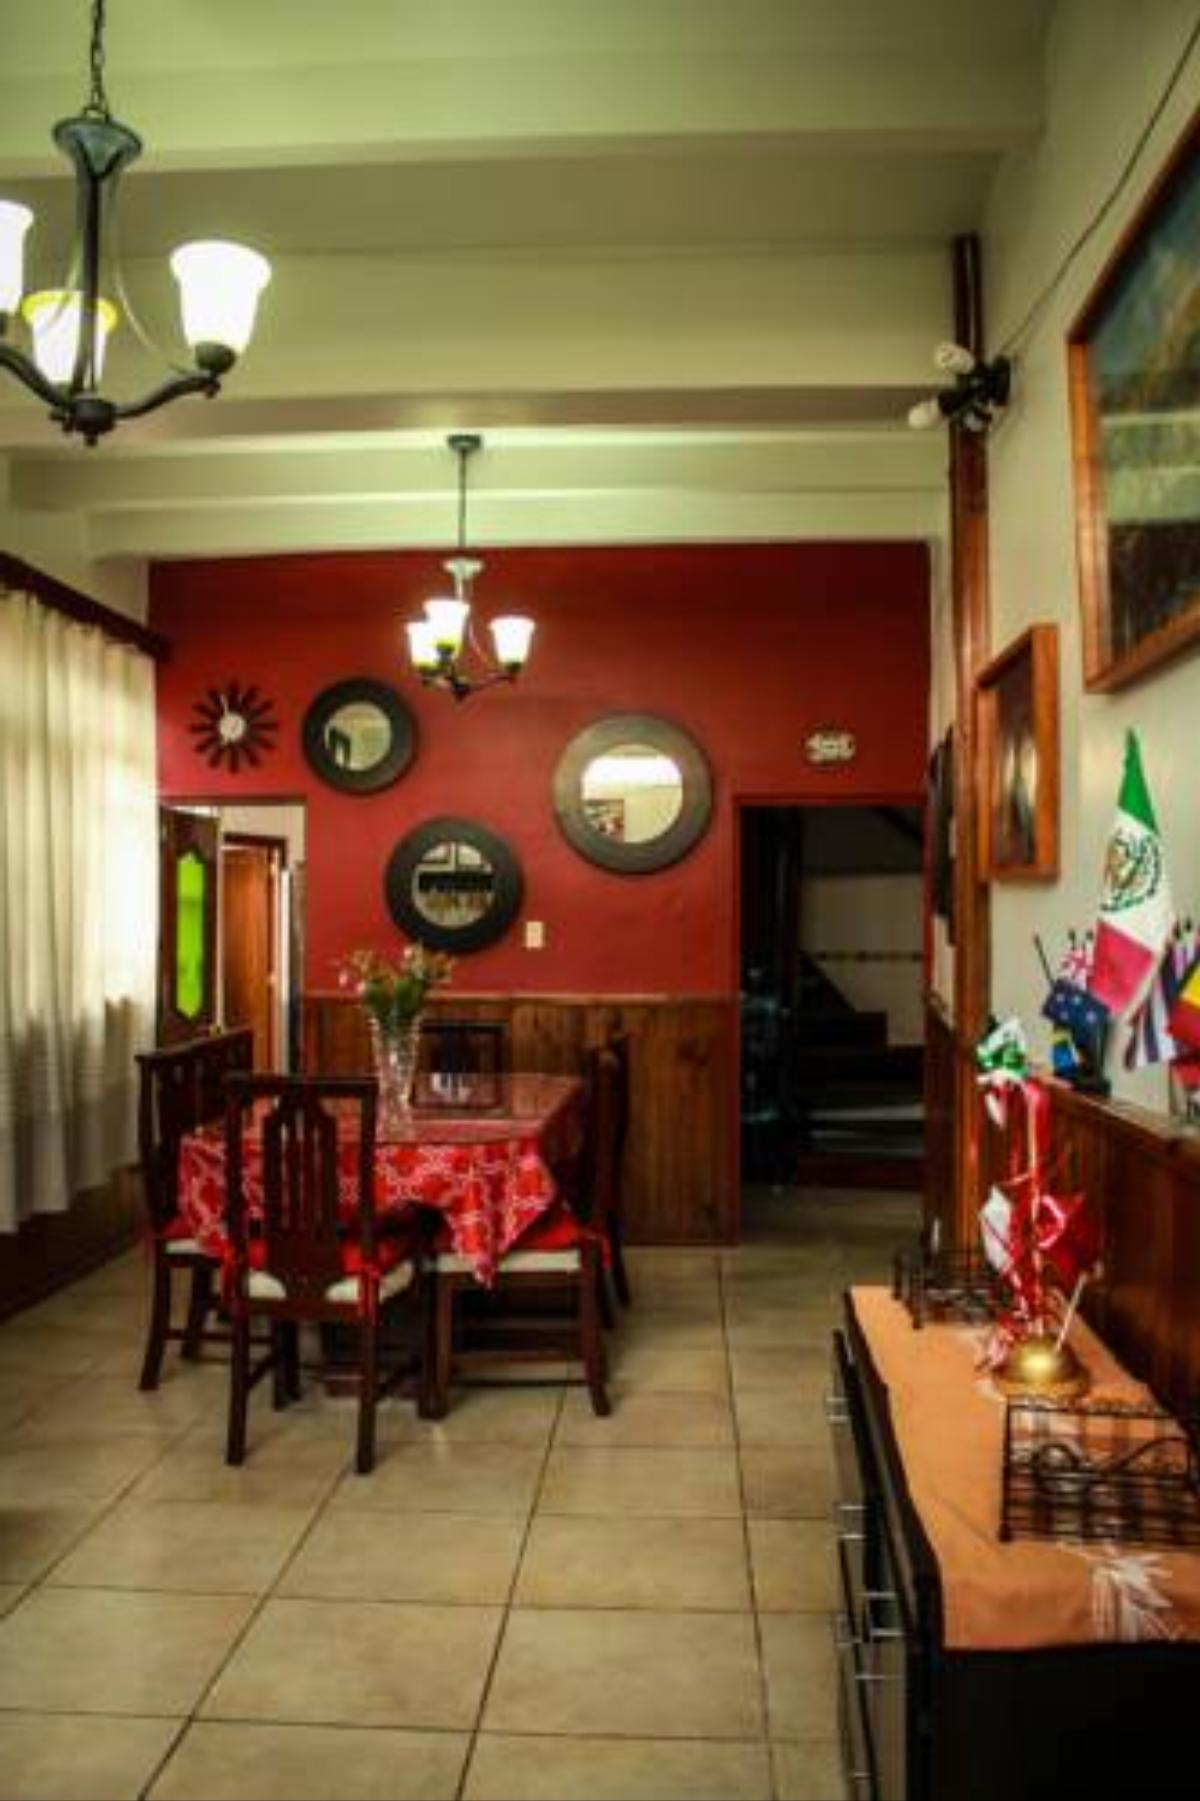 El Hogar de Carmelita Hotel Guanajuato Mexico